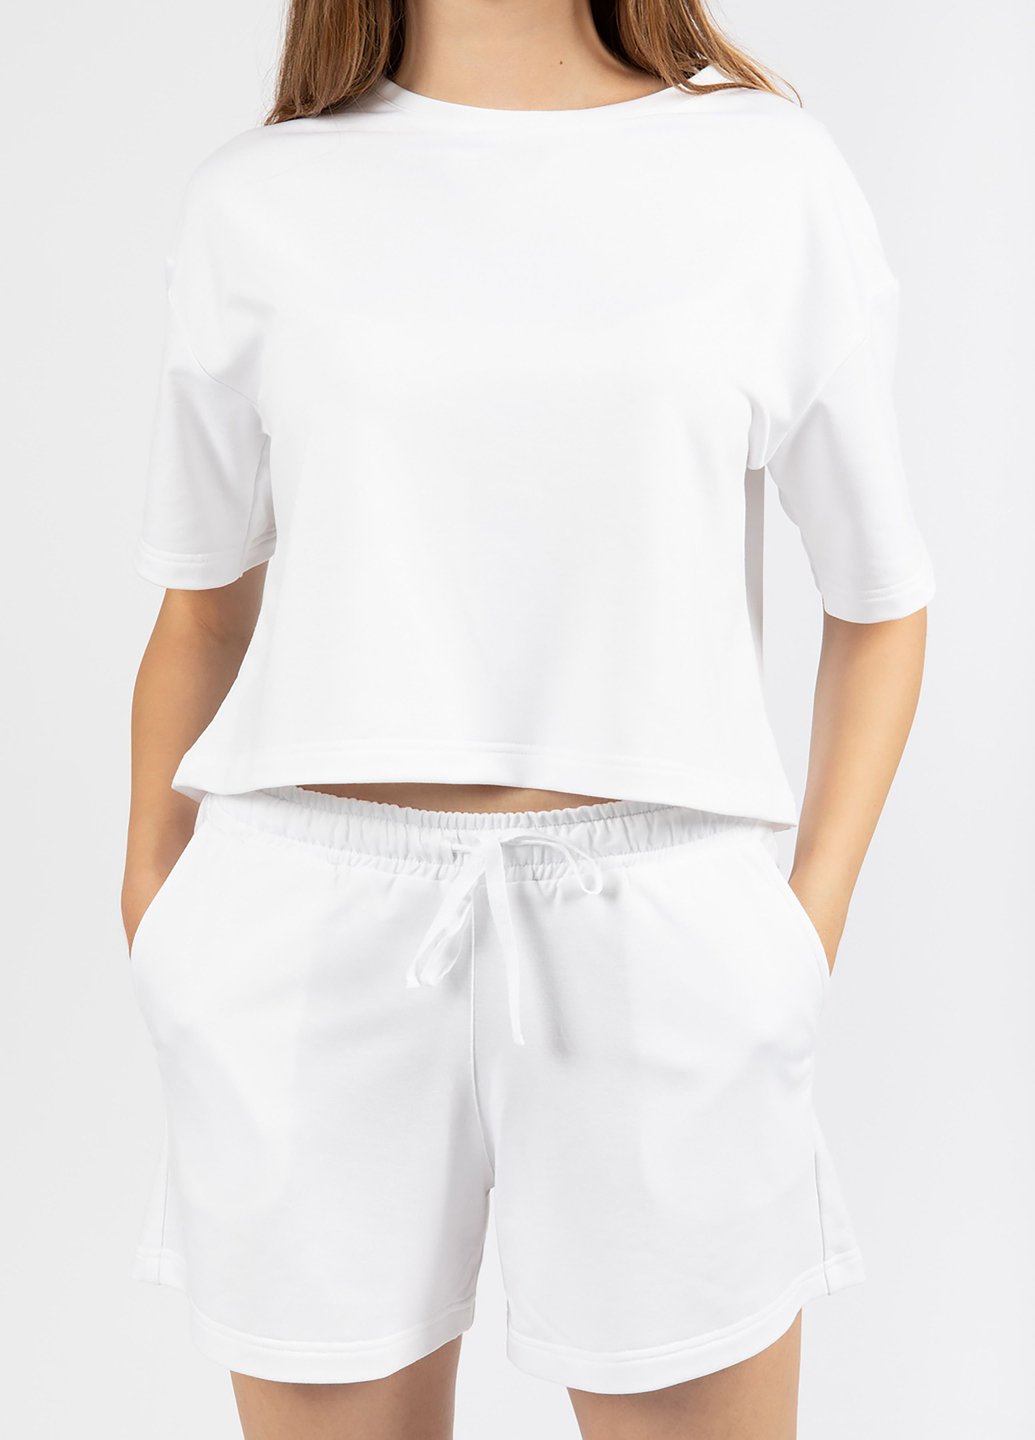 Купить Оверсайз футболка женская Merlini Нарбон 800000001 - Белый, 42-44 в интернет-магазине